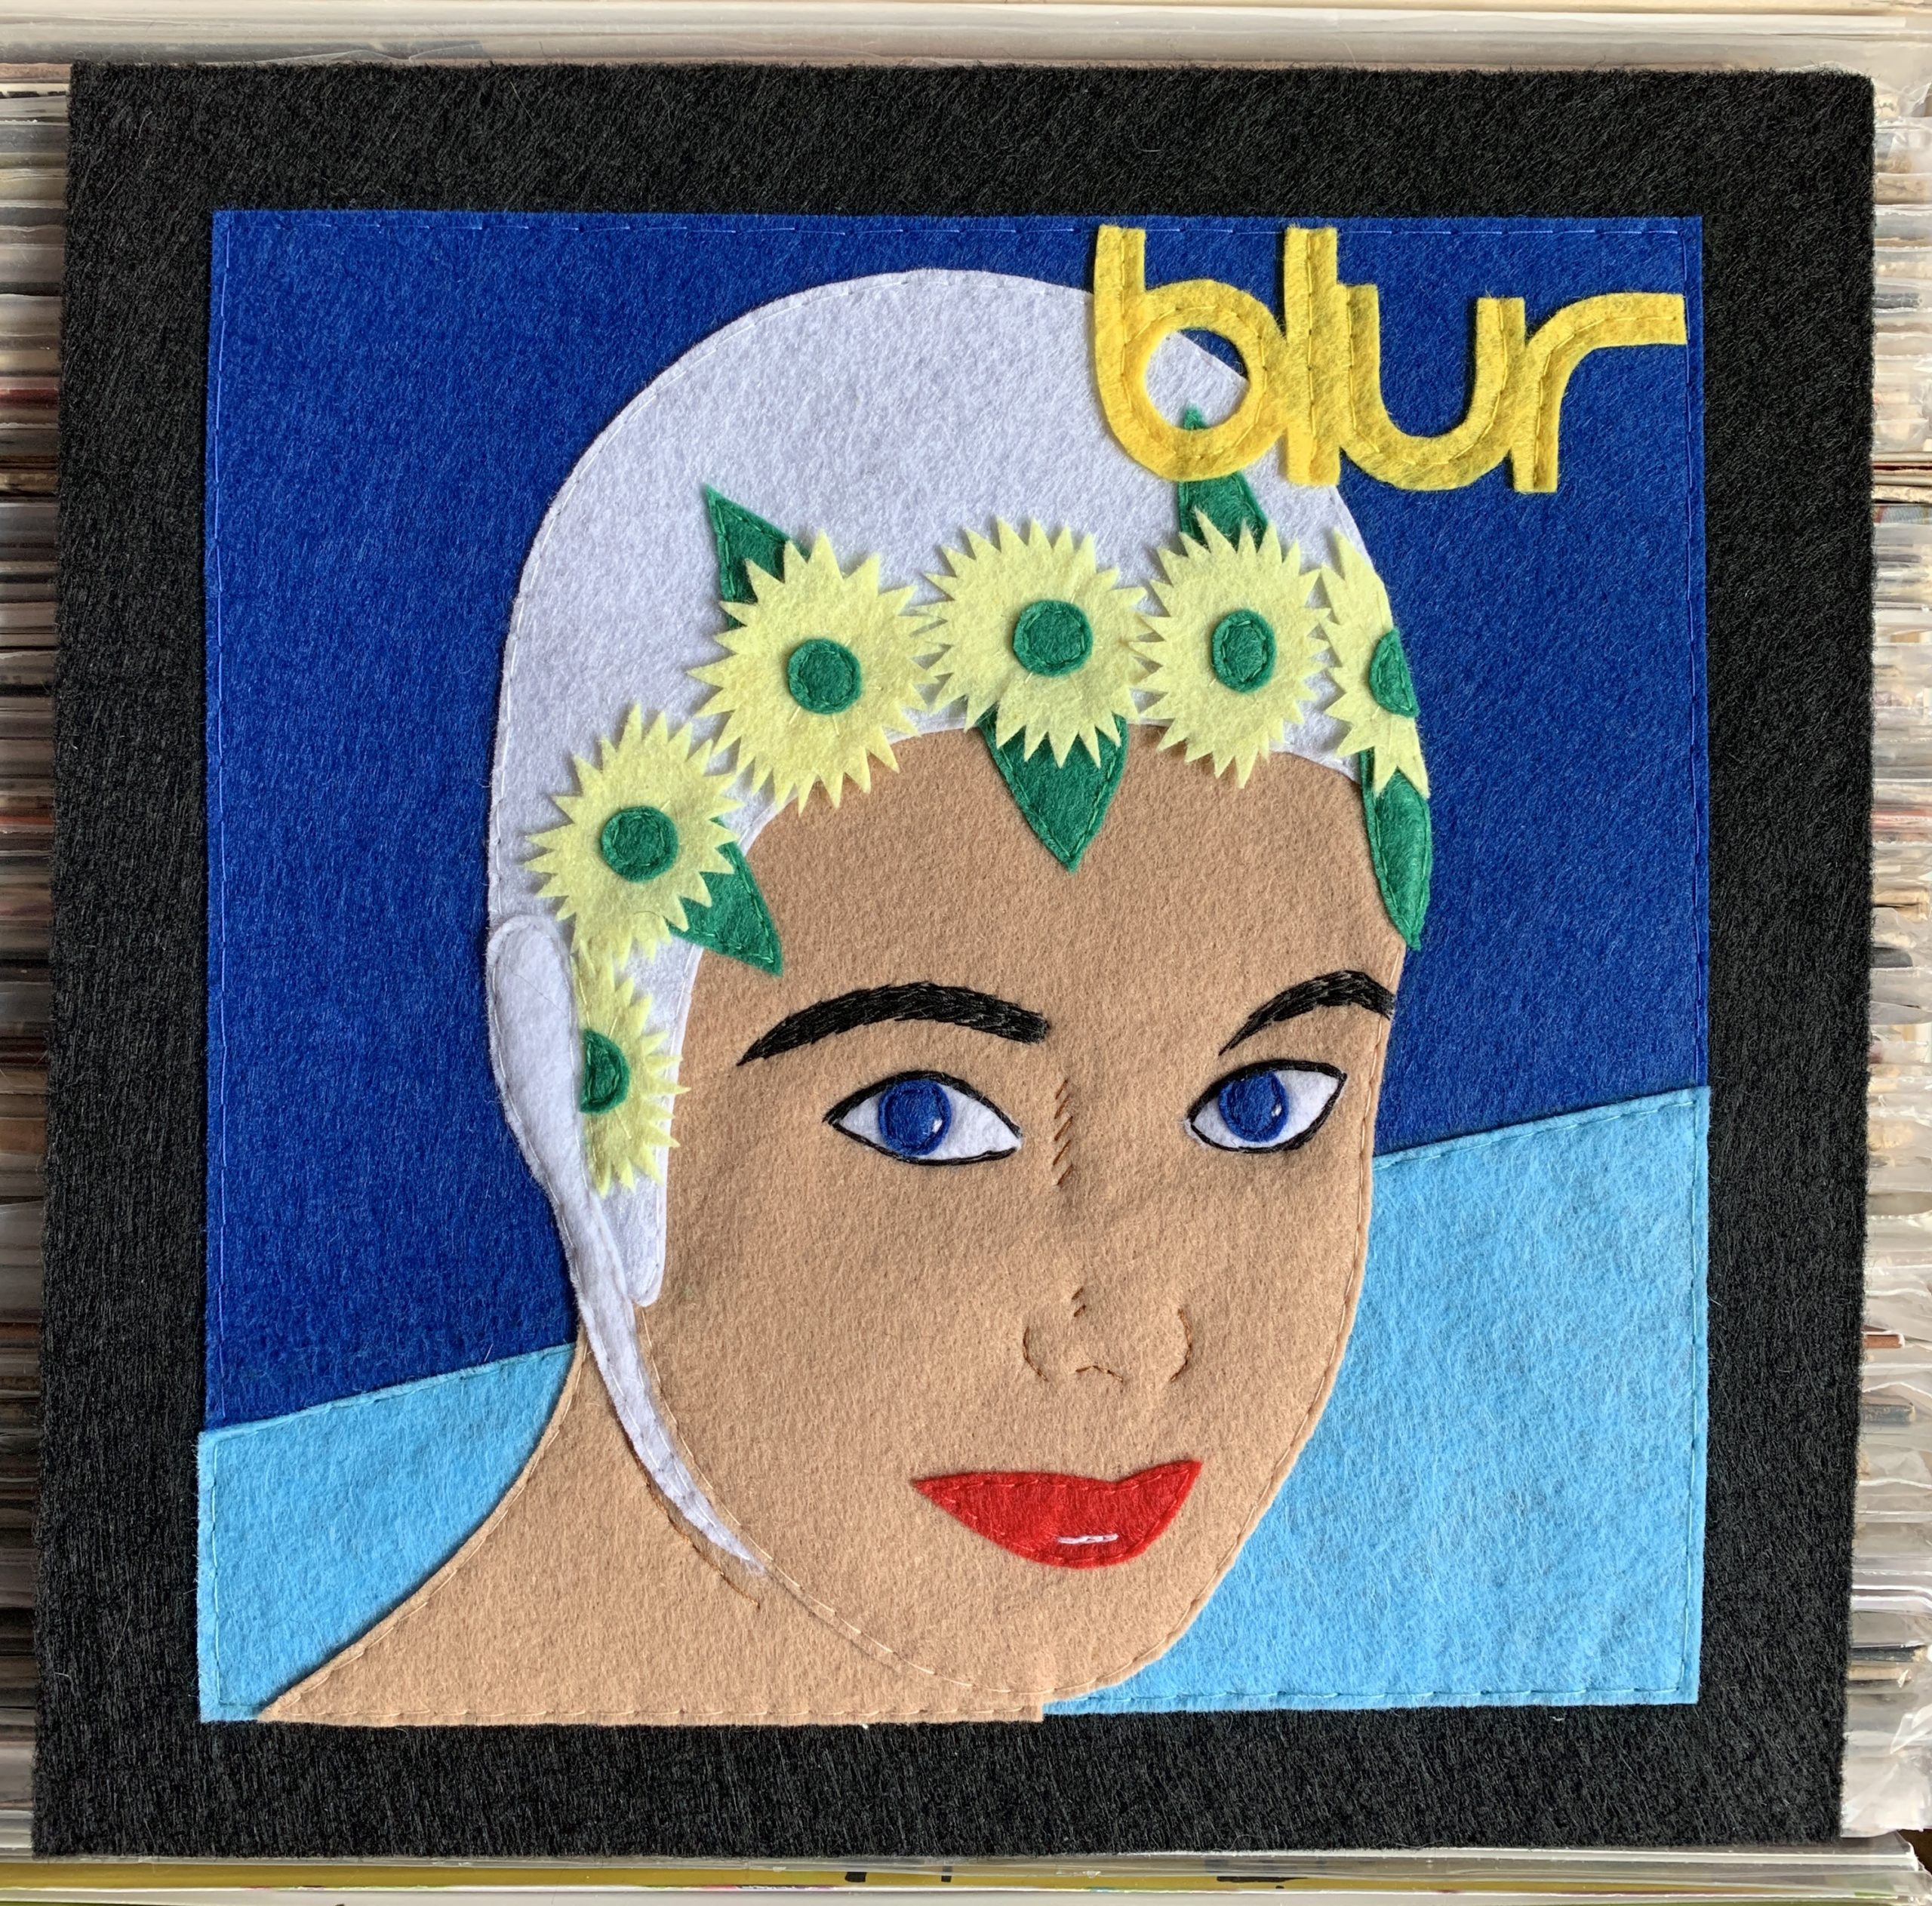 Blur – Leisure (1991)